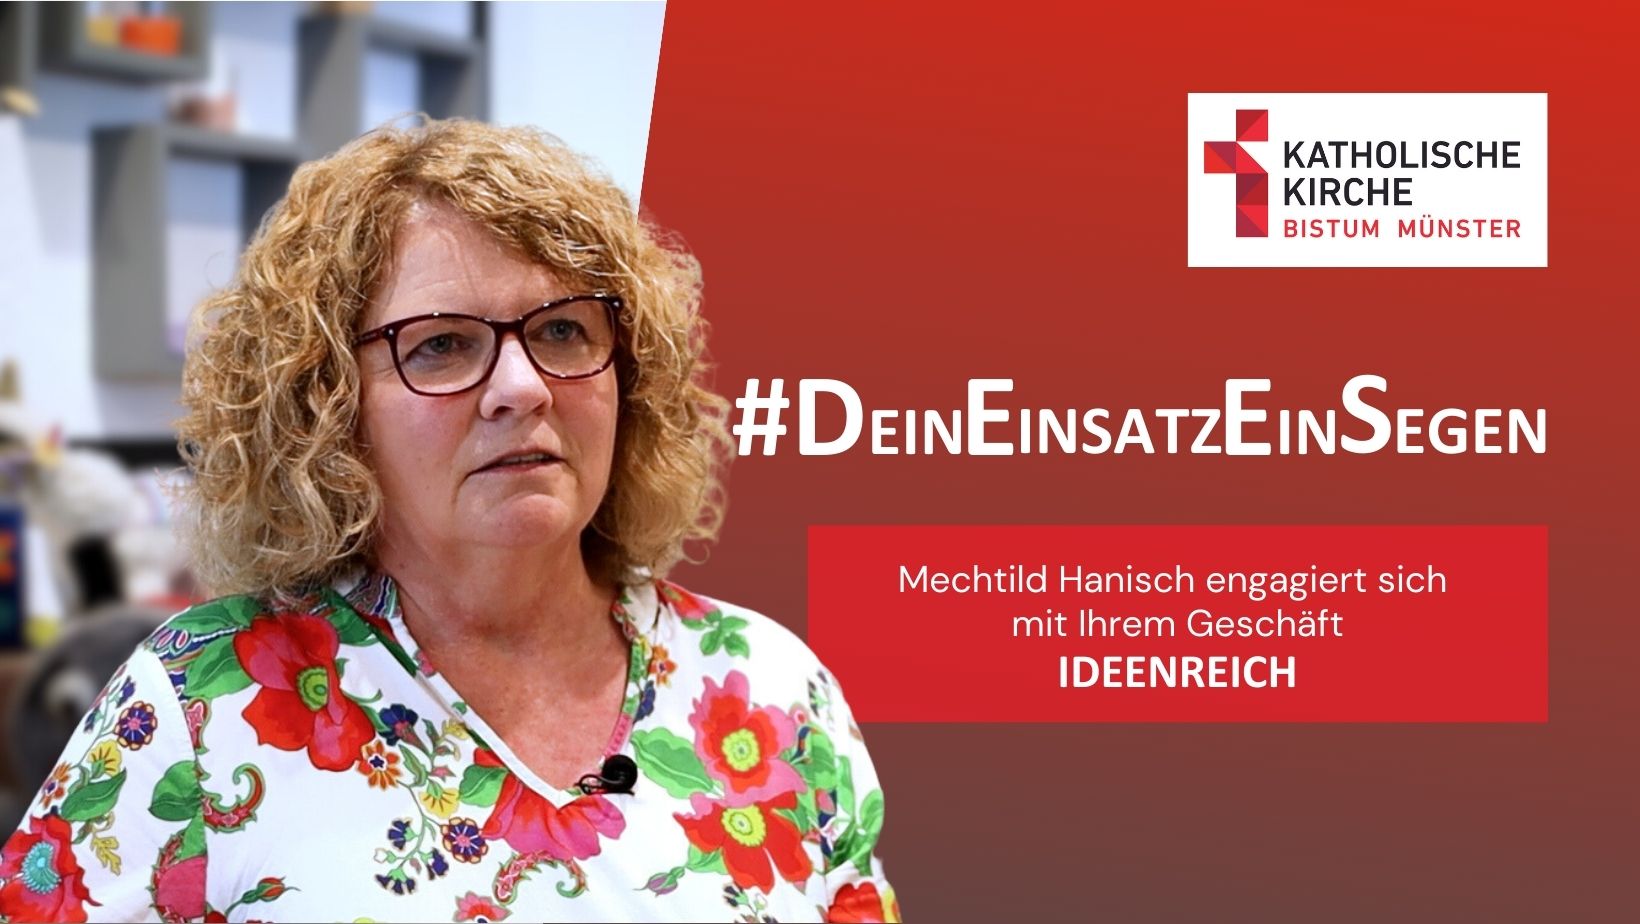 Mechtild Hanisch engagiert sich mit ihrem Geschäft "Ideenreich".